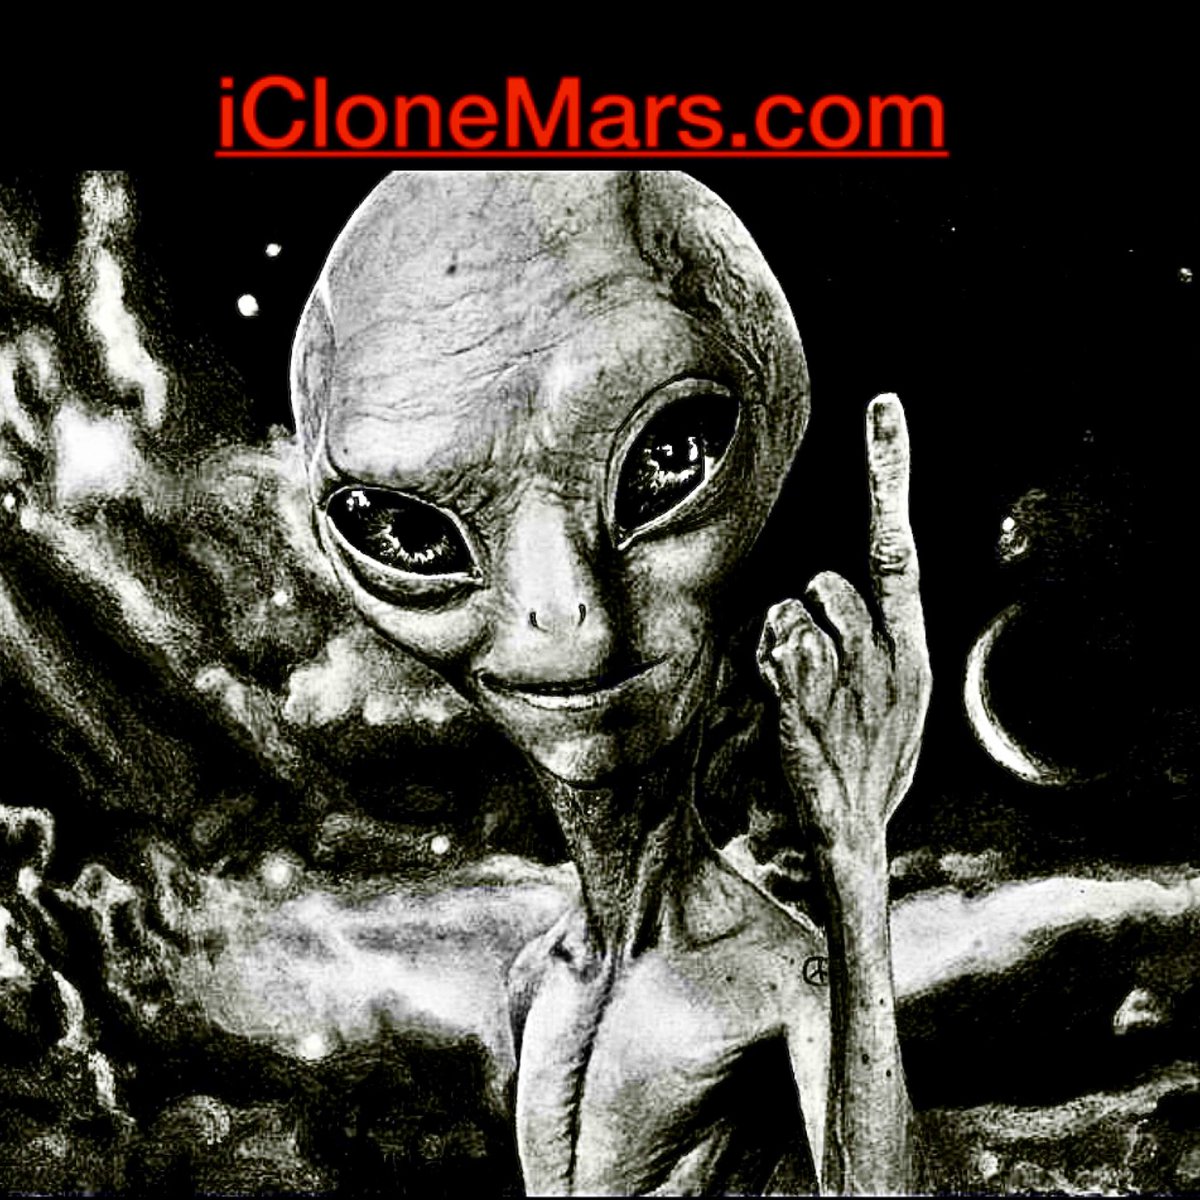 #Biotechnology #dna #artificalintelligence #chatgpt #ELON #elonmusk #medicalresearch #virus #medical #clones #viruses #cloning #SpaceExploration #spacex #spacetravel #mars #moon #crispr #humanity #alien #aliens #Biotechnology #biotech #NewsUpdates #TechNews